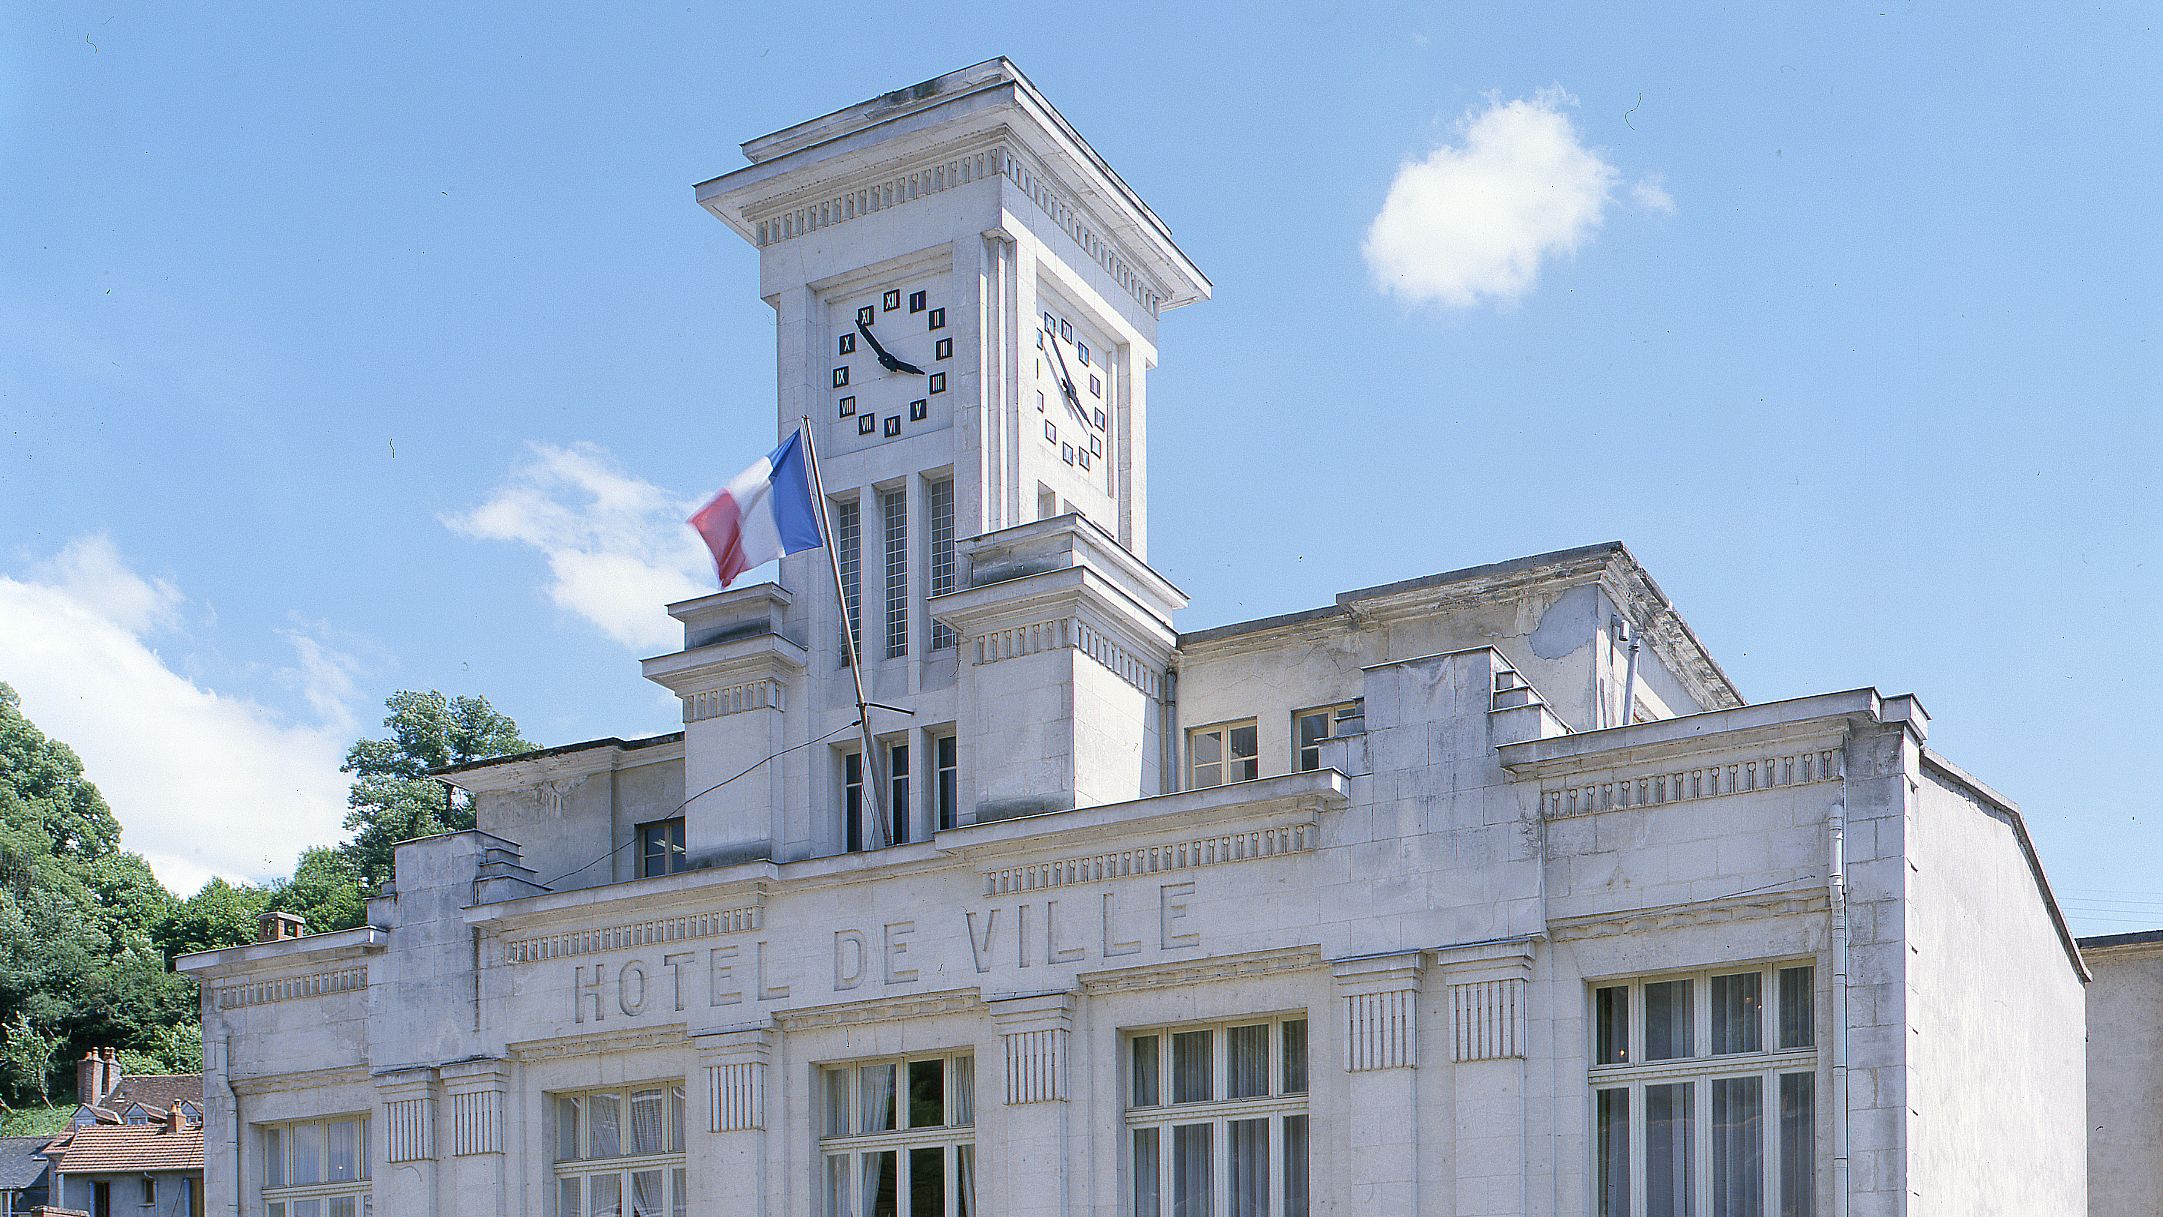 Hôtel de ville d'Aubusson © Région Nouvelle-Aquitaine, Inventaire Général du patrimoine culturel, P. Rivière